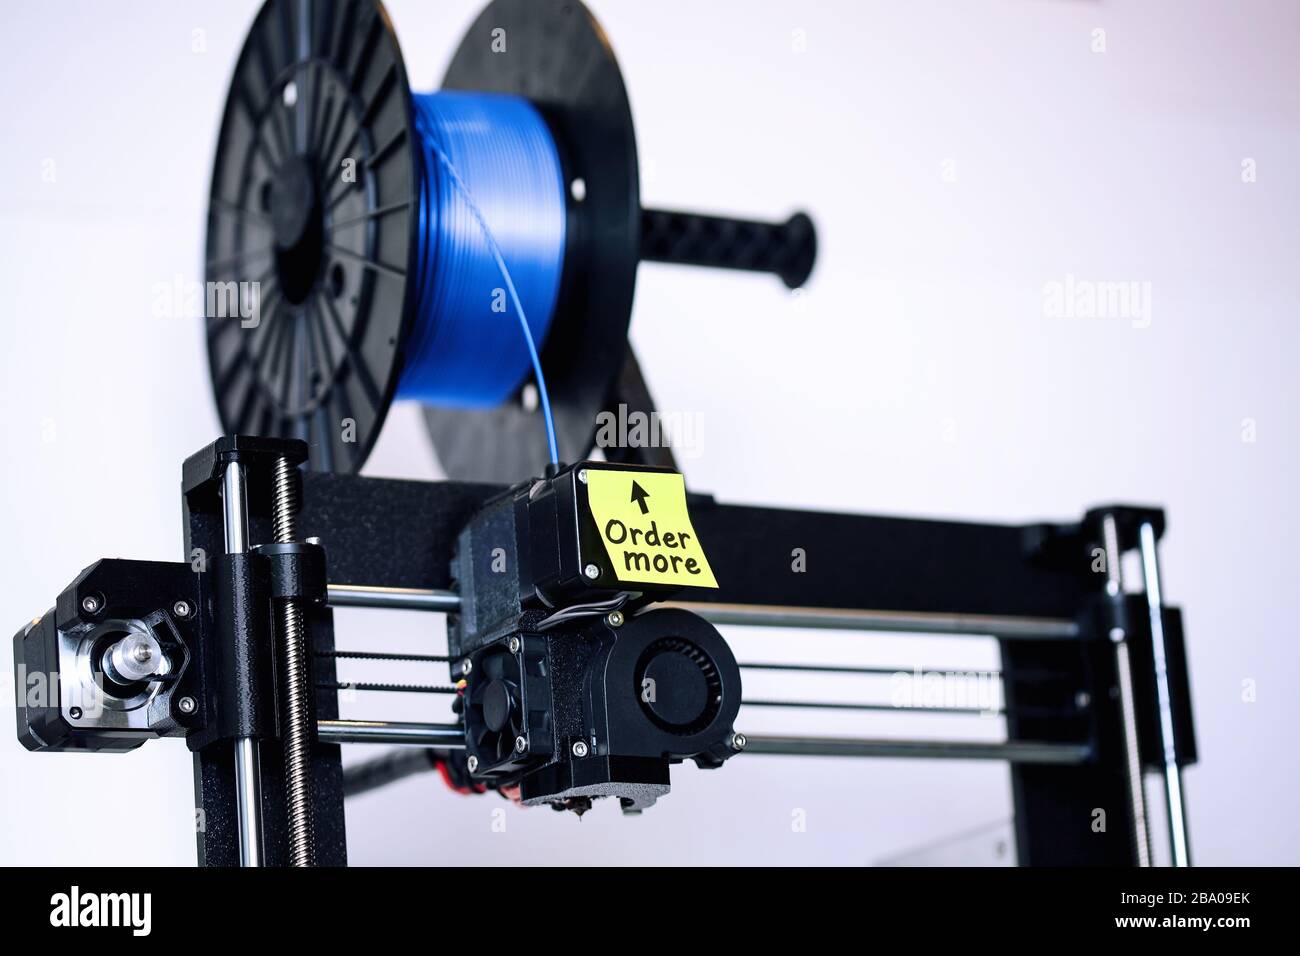 Ein 3D-Drucker im FDM-Stil mit einer Spule aus Filament, die niedrig läuft, und einer Haftnotiz zur Erinnerung, um mehr Silk-PLA-Glühfaden zu bestellen. Stockfoto